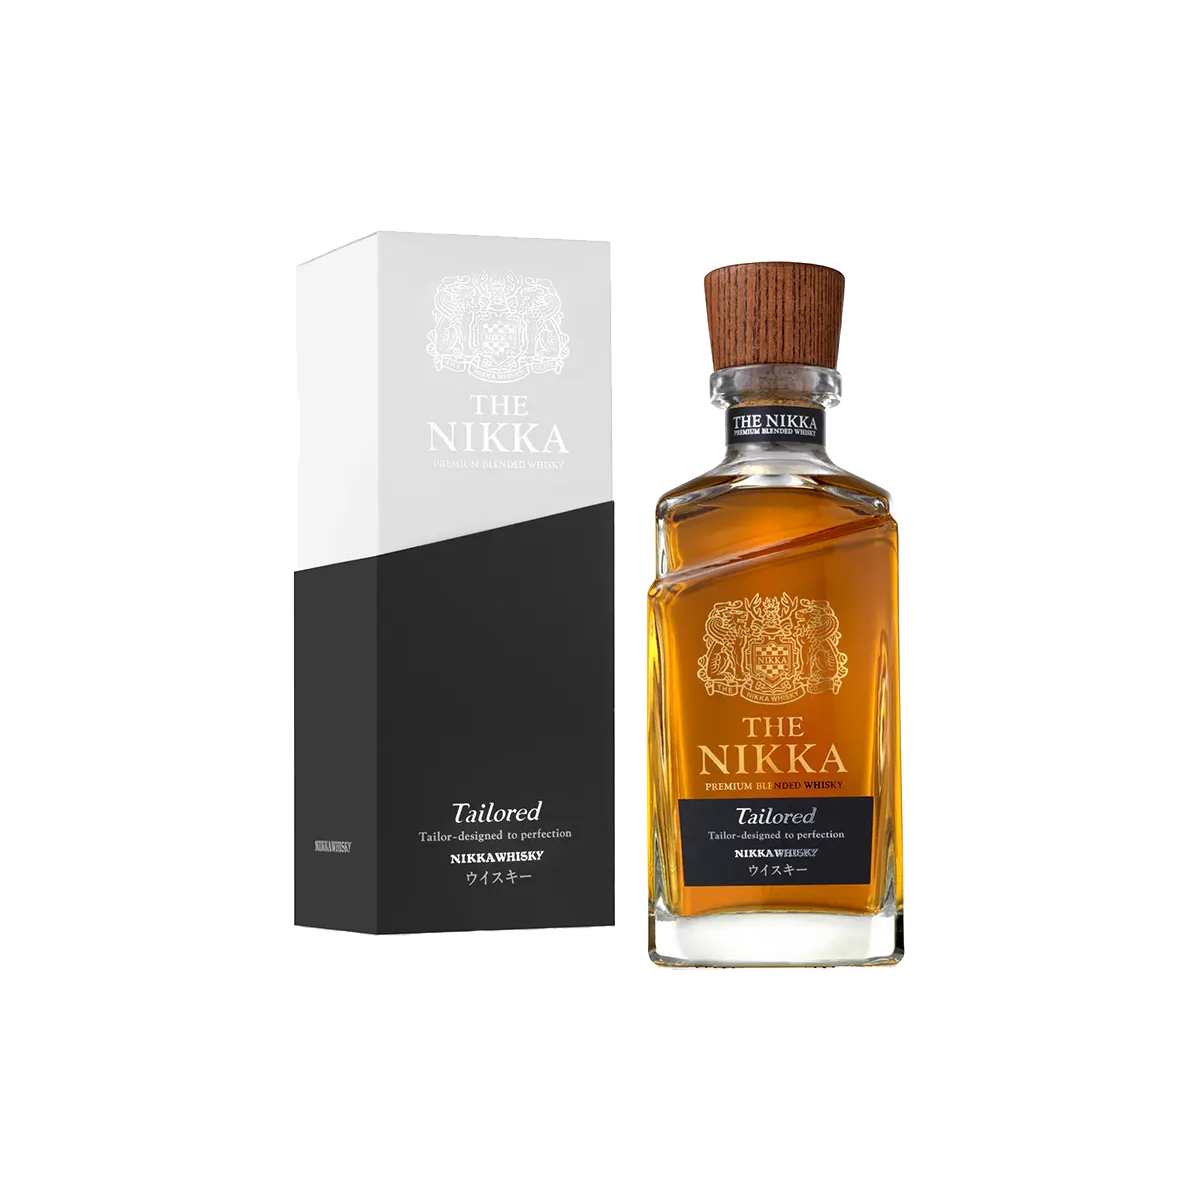 Nikka The Nikka Tailored Blended Whisky 43 %